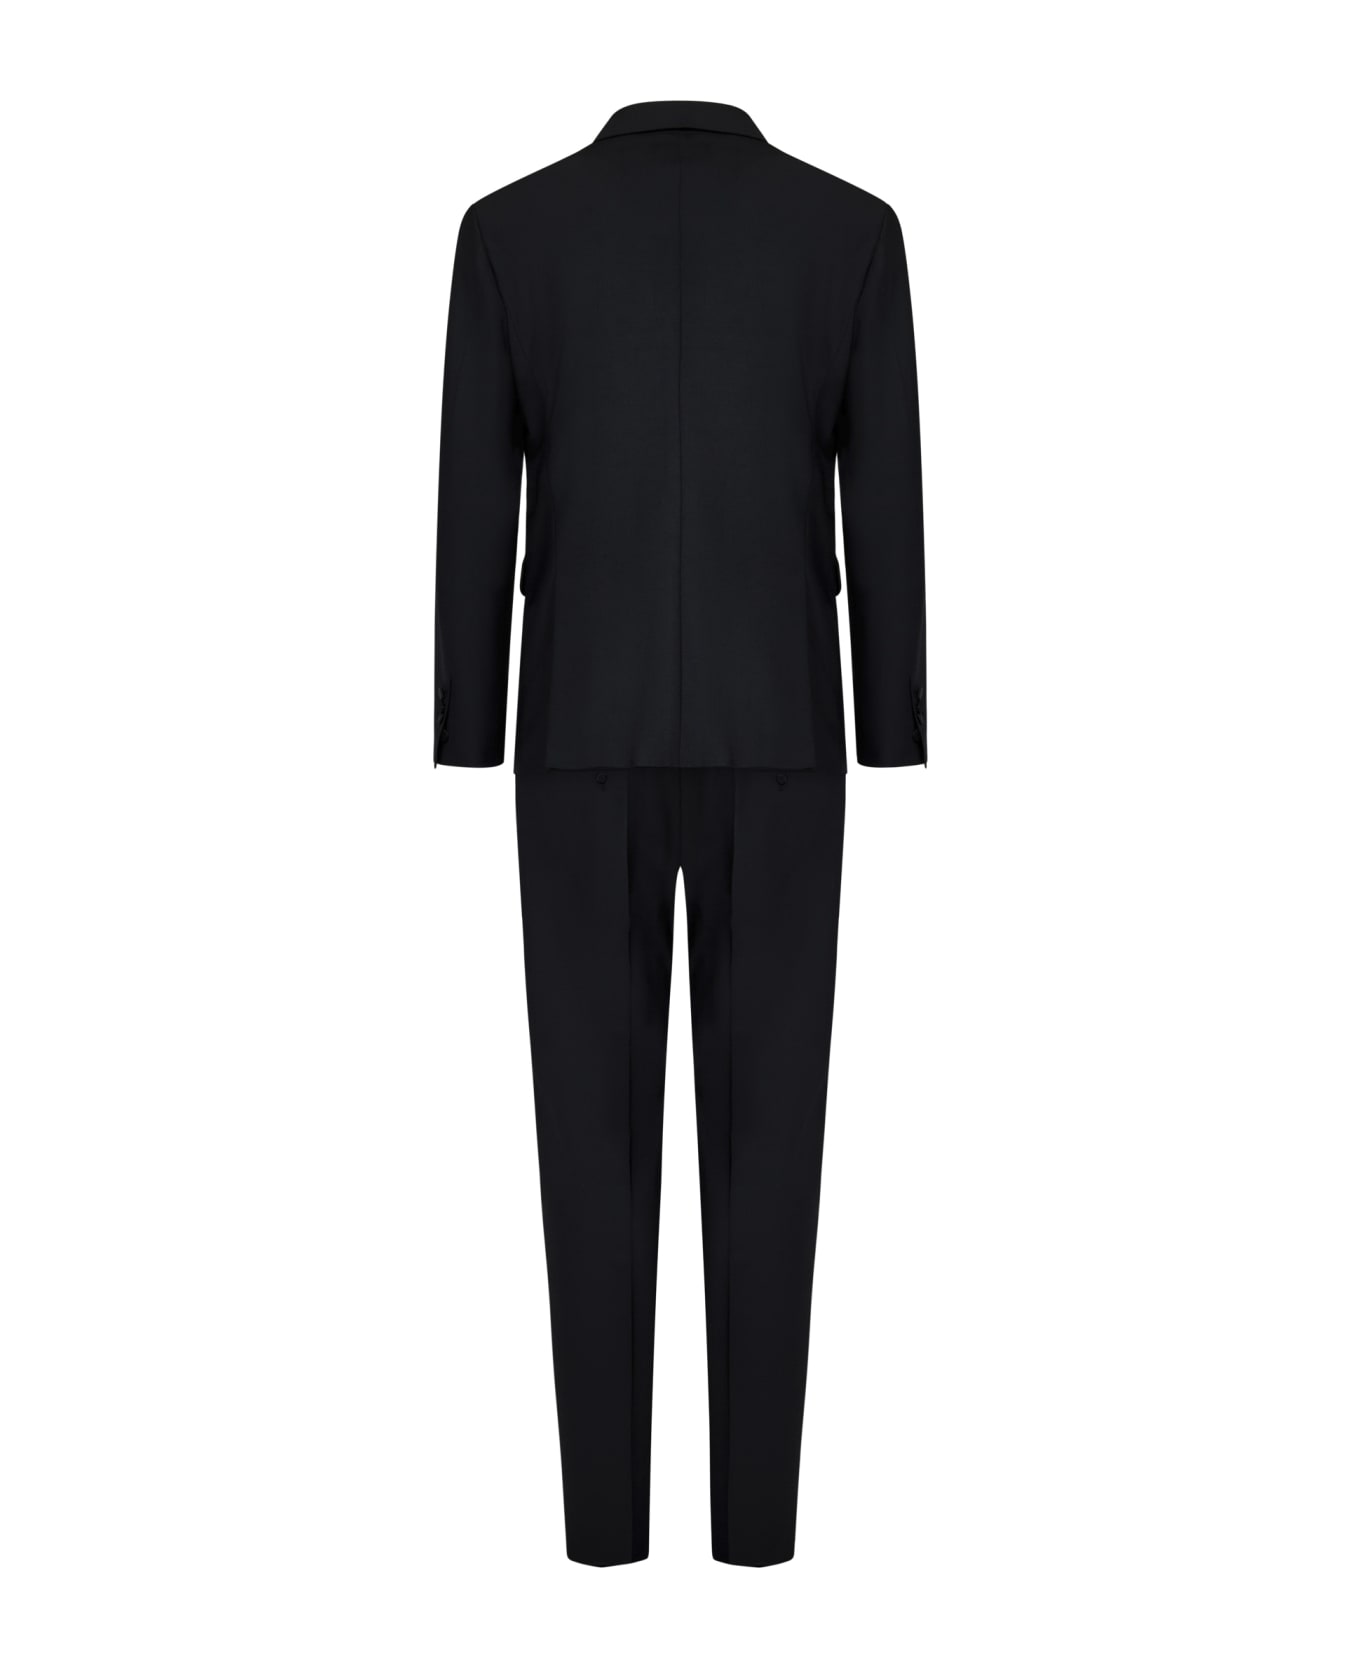 Dsquared2 Miami Suit - Black